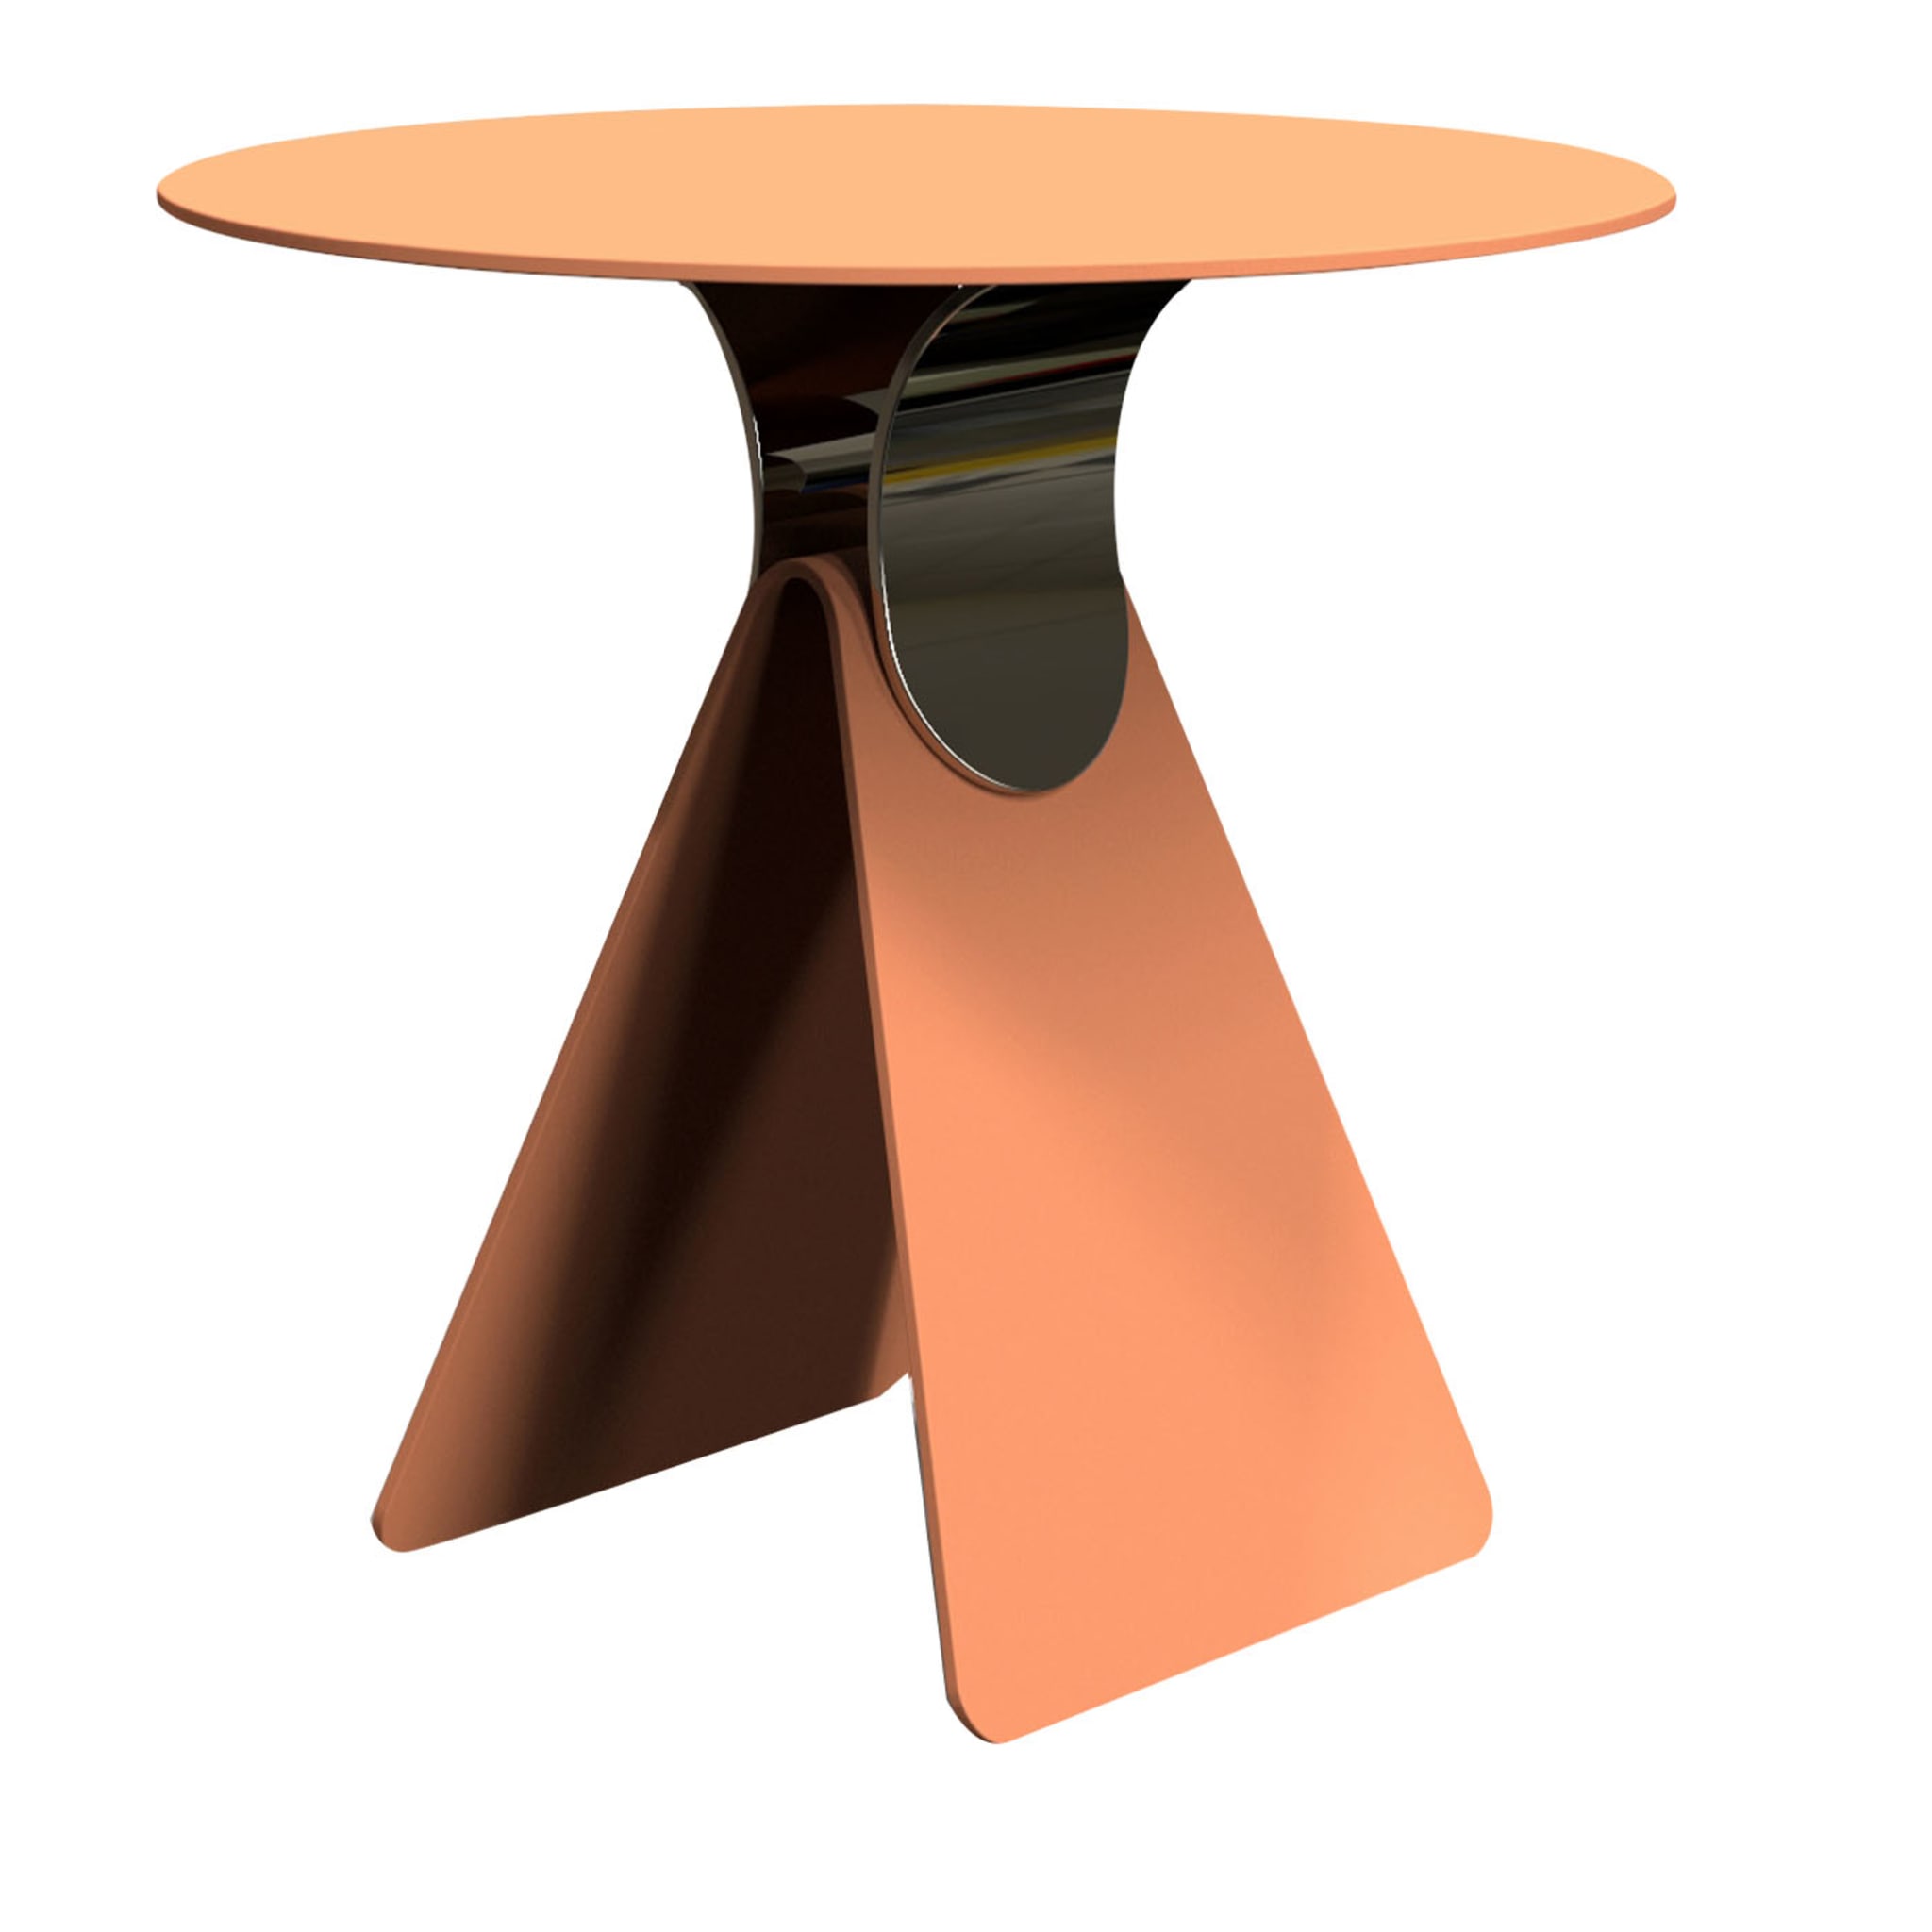 Cipputi Terracotta & Gold Side Table by Quaglio Simonelli - Main view